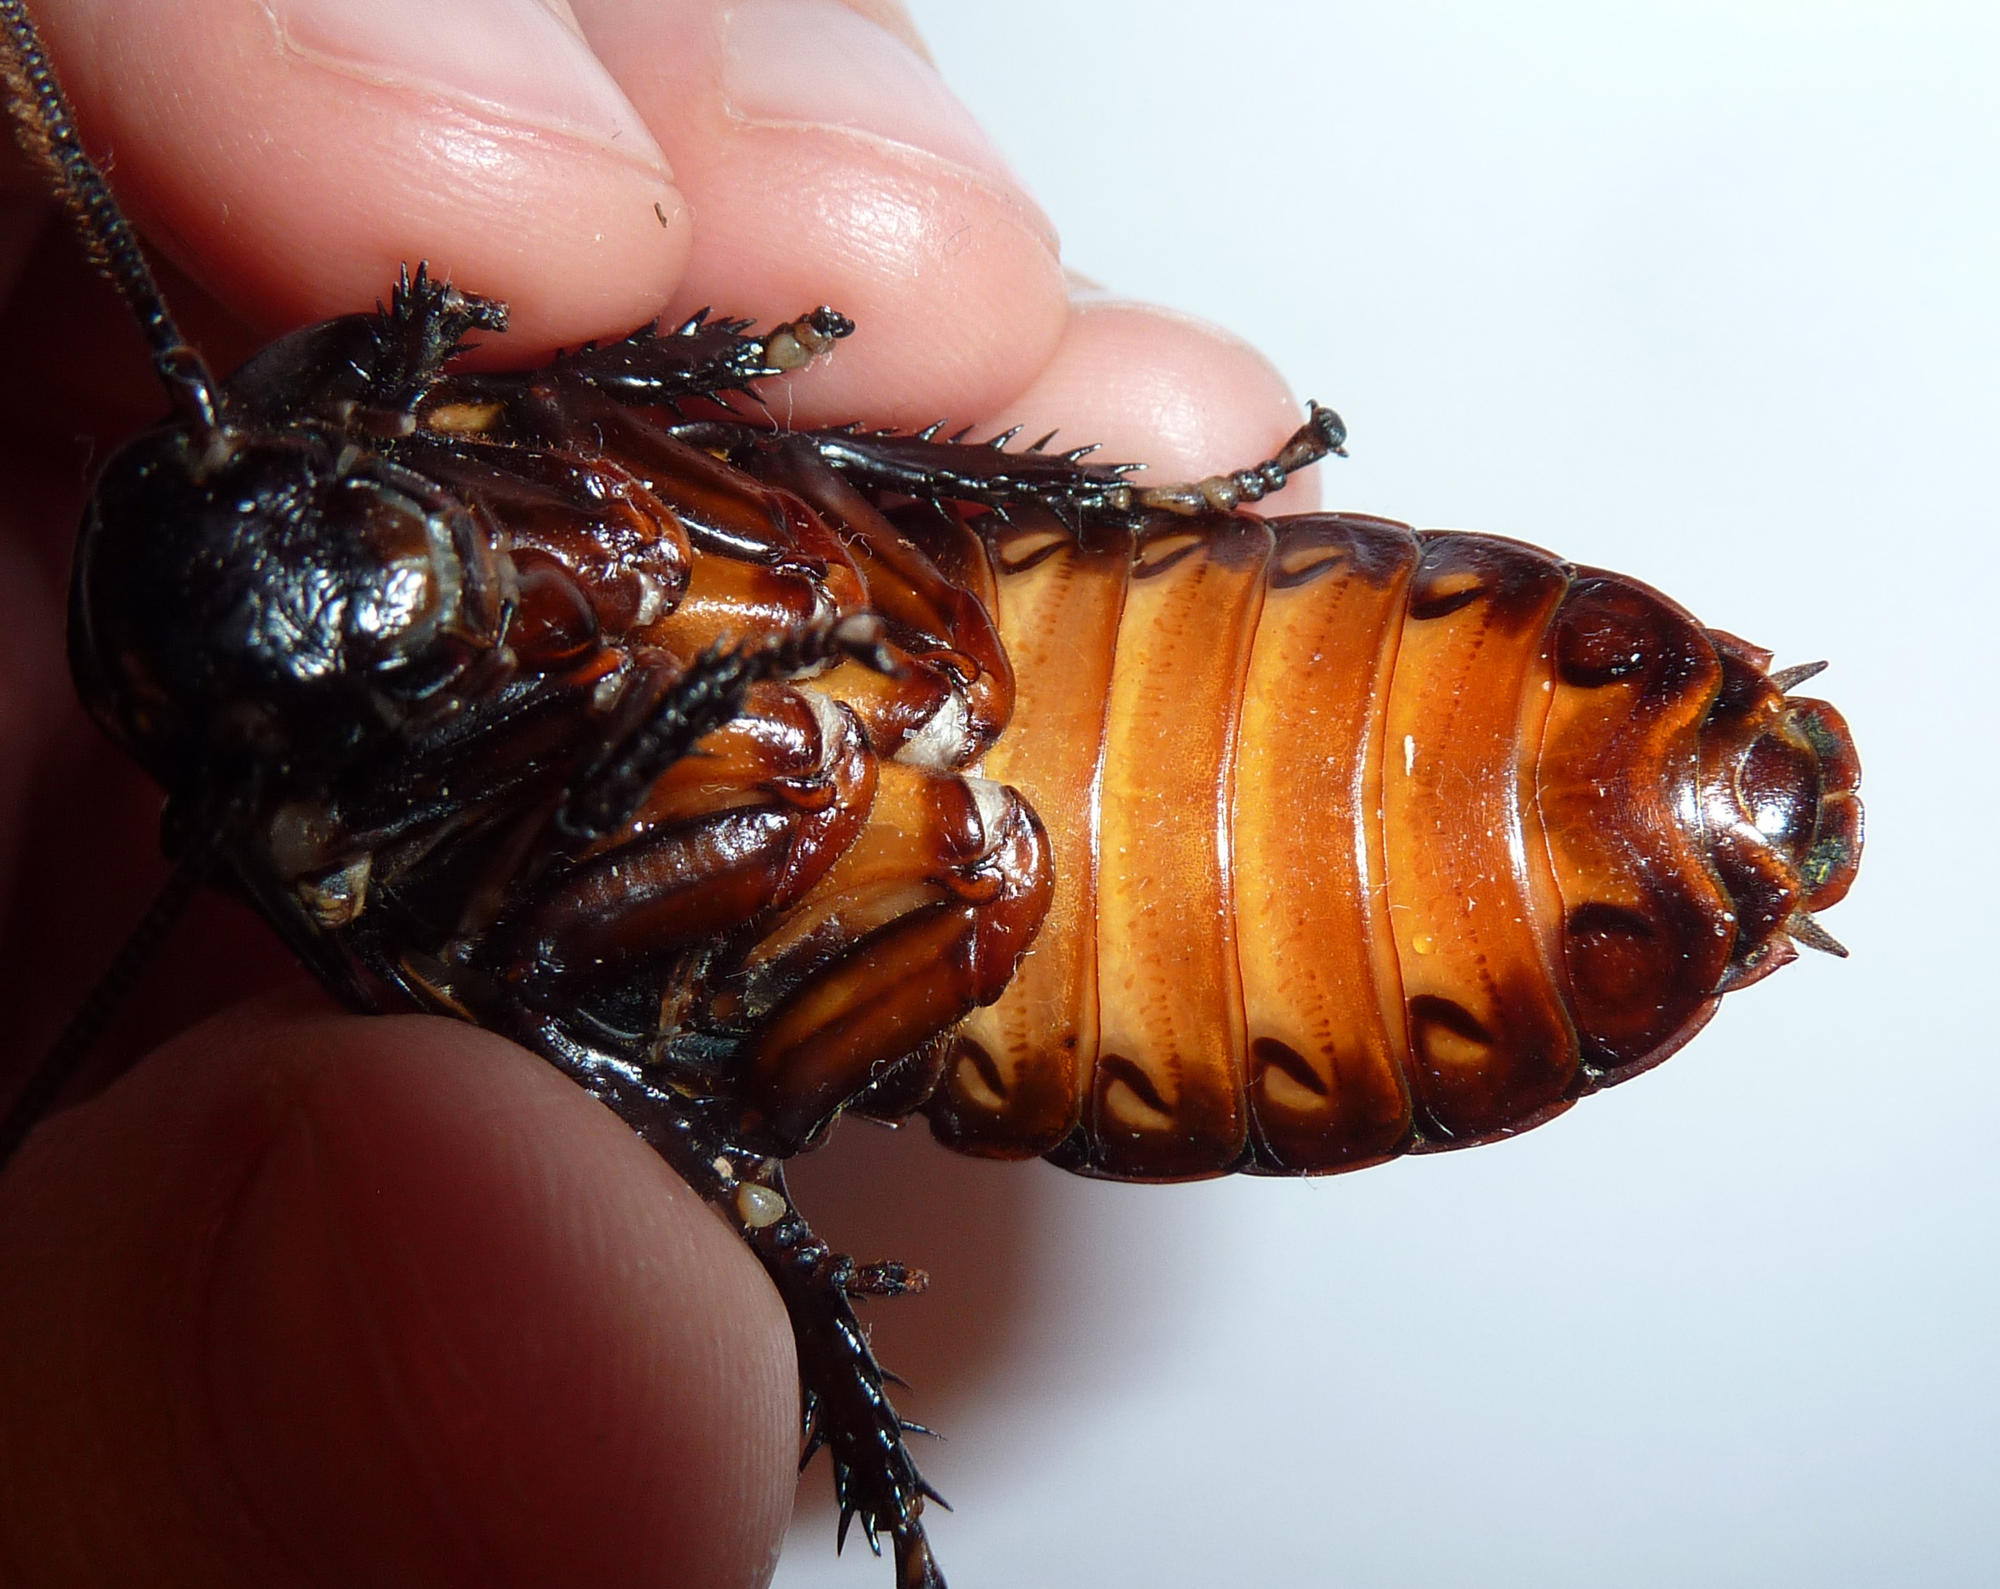 Мадагаскарский шипящий таракан | мир животных и растений